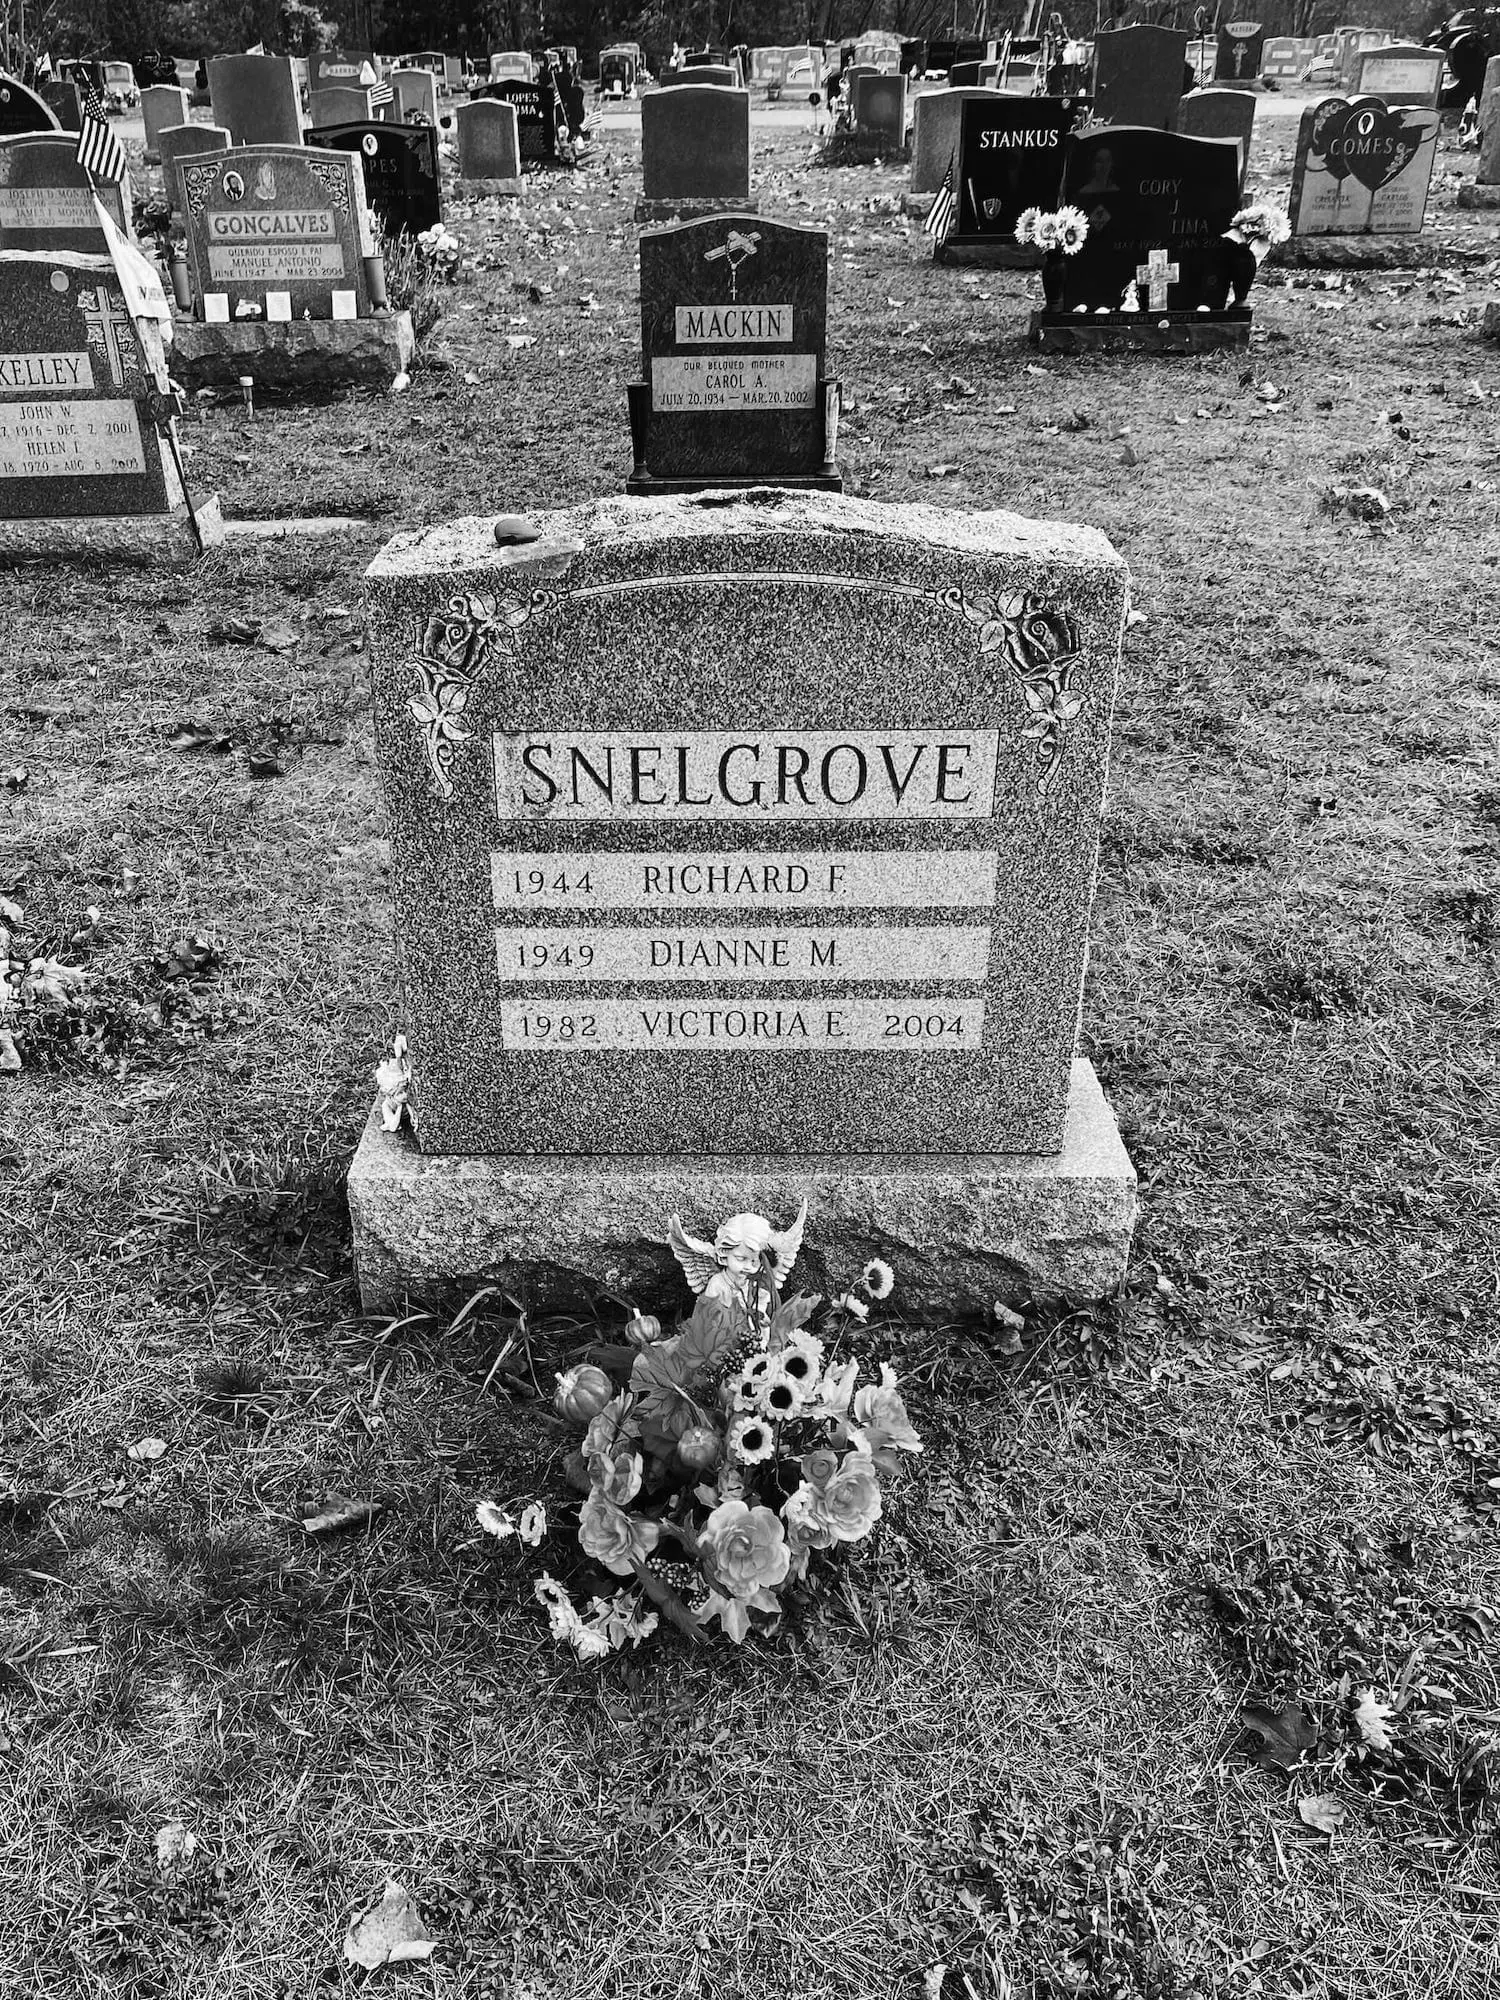 Victoria Snelgrove's headstone.